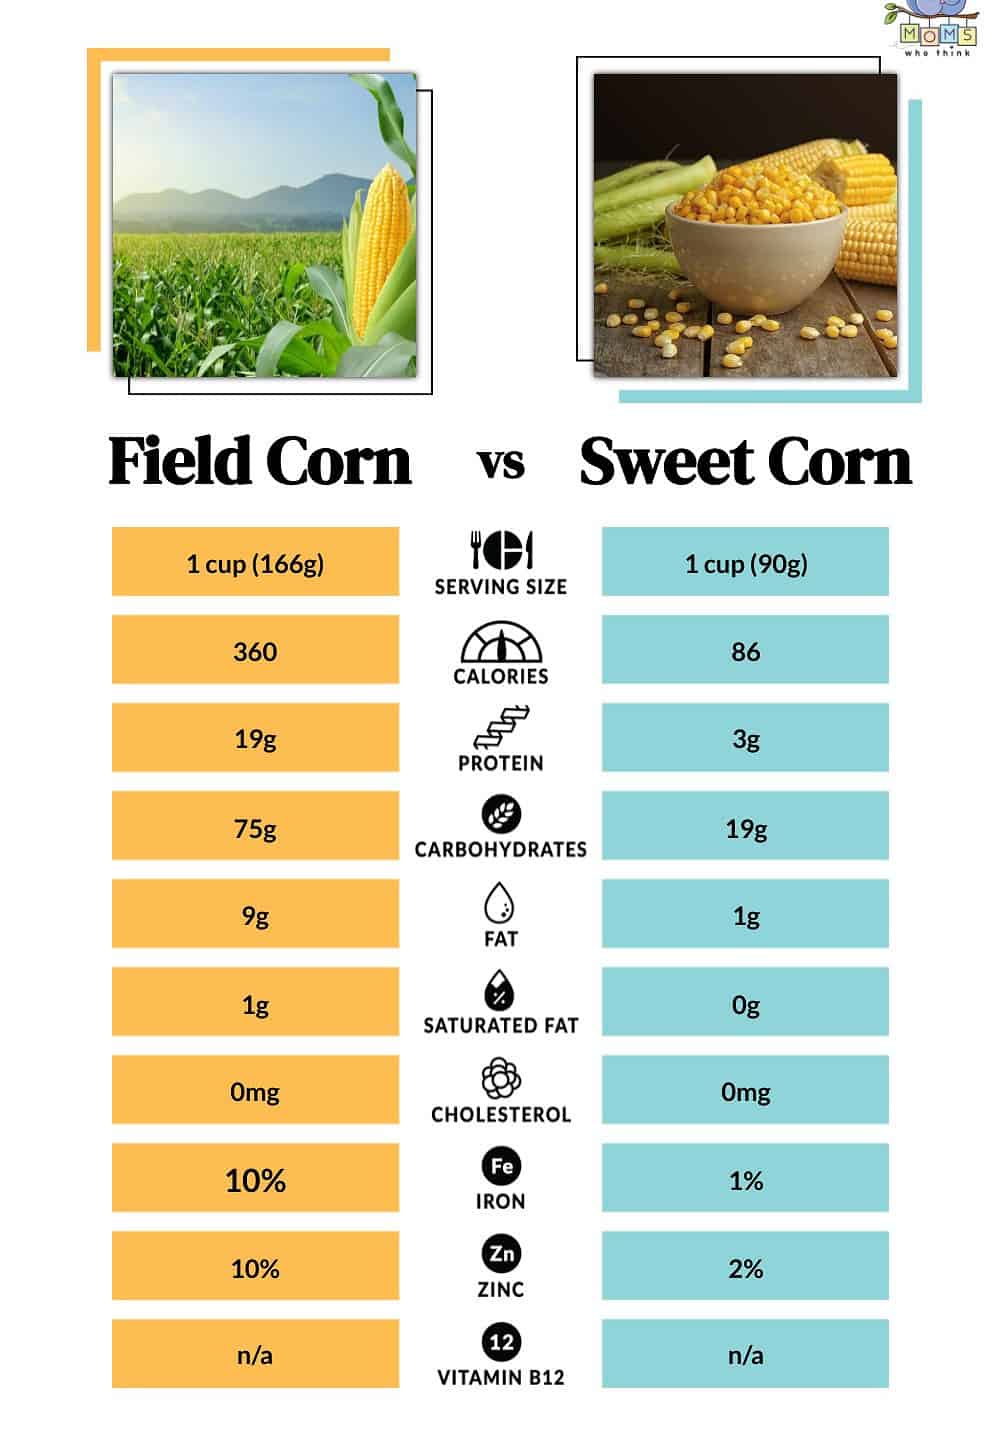 Field Corn vs Sweet Corn Nutritional Facts